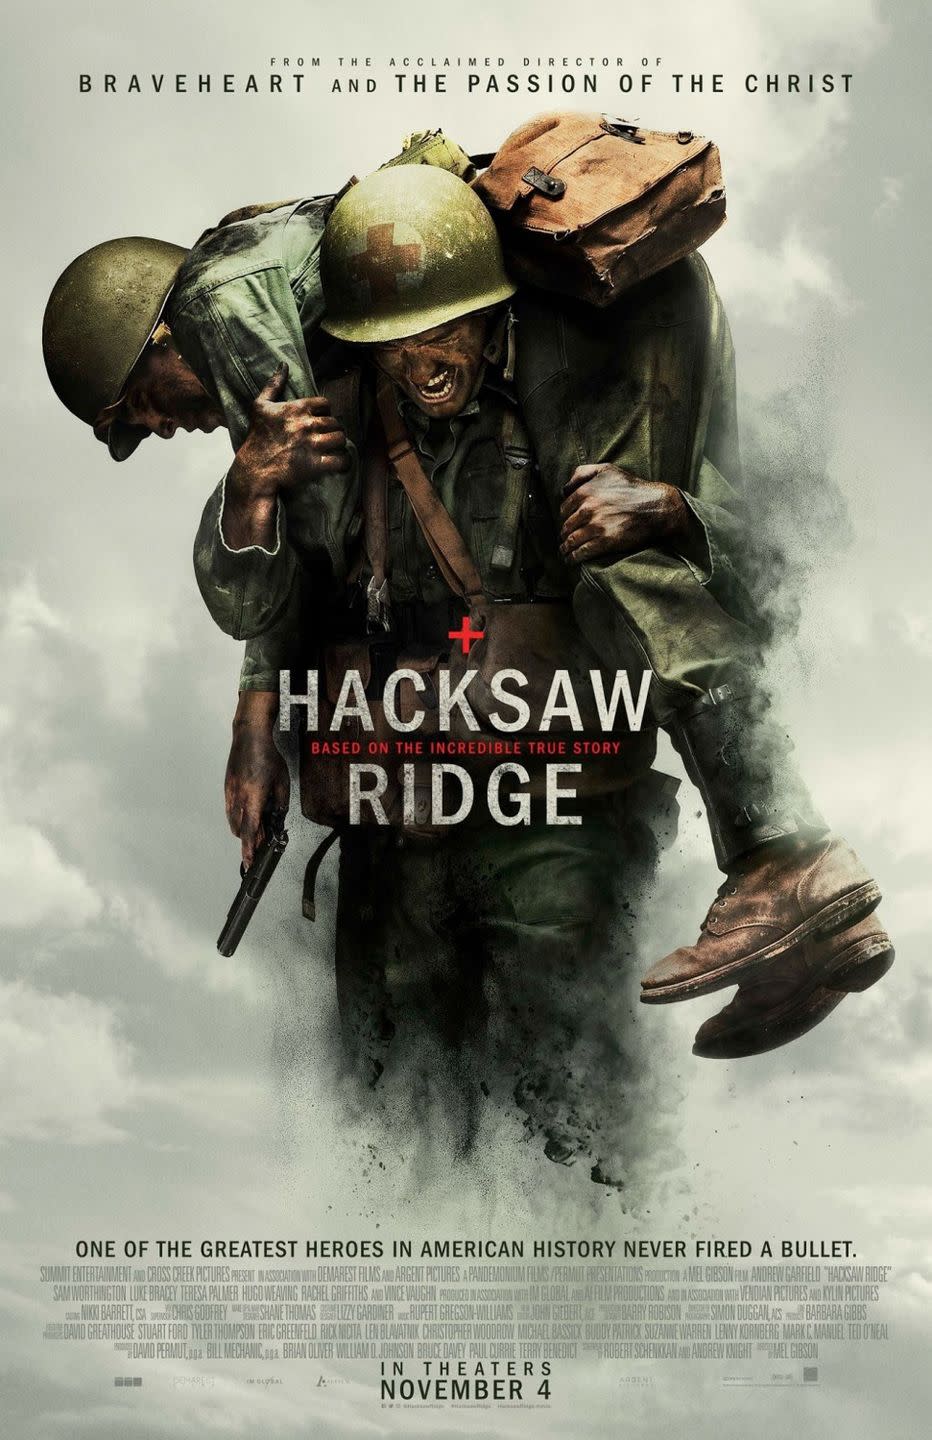 7) Hacksaw Ridge